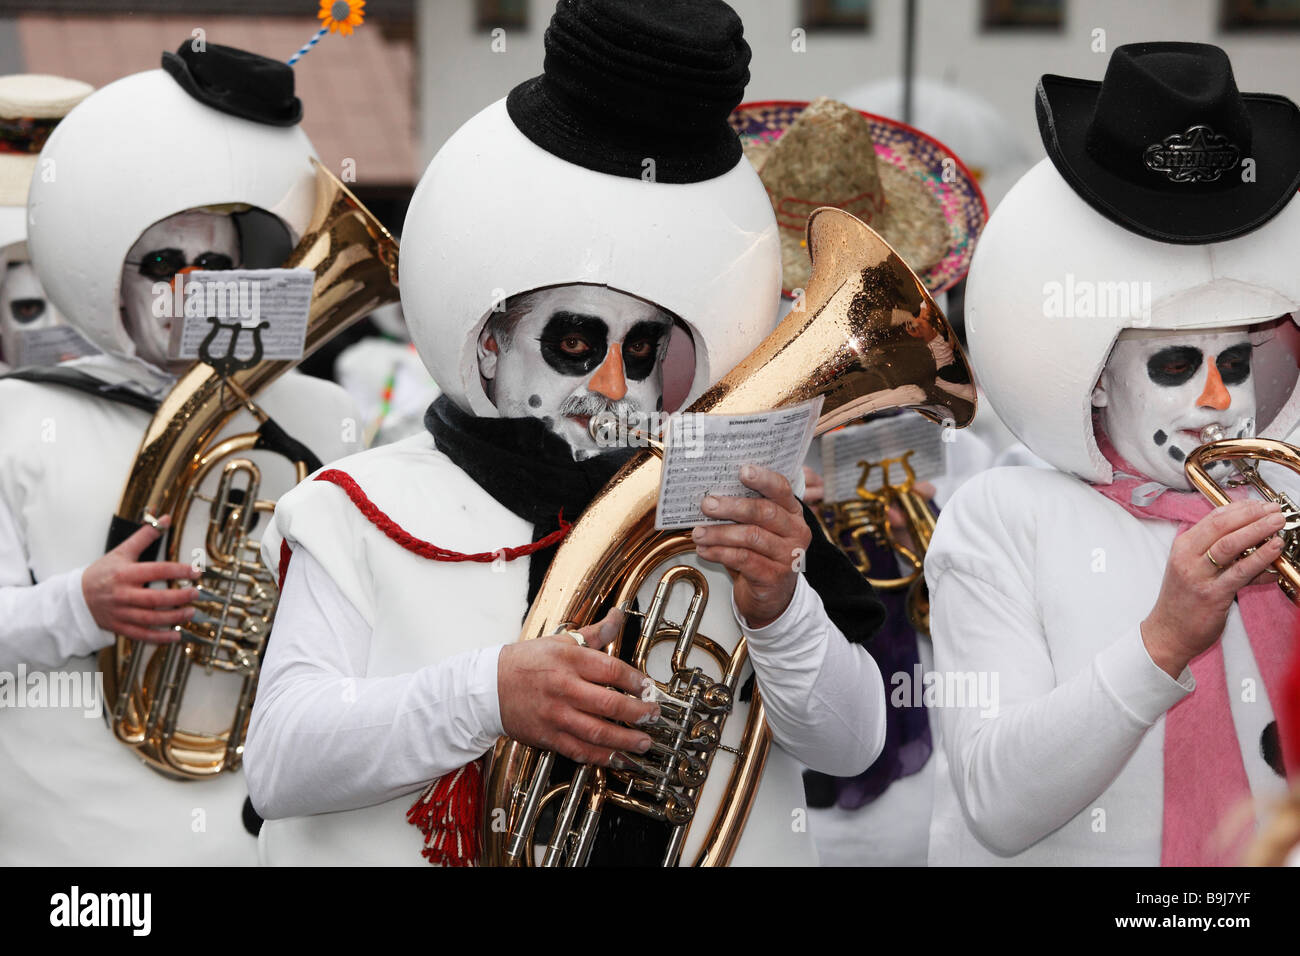 Thaurer Schneemandl Musig, band, Mullerlaufen parade in Thaur, carnival parade, Tyrol, Austria Stock Photo